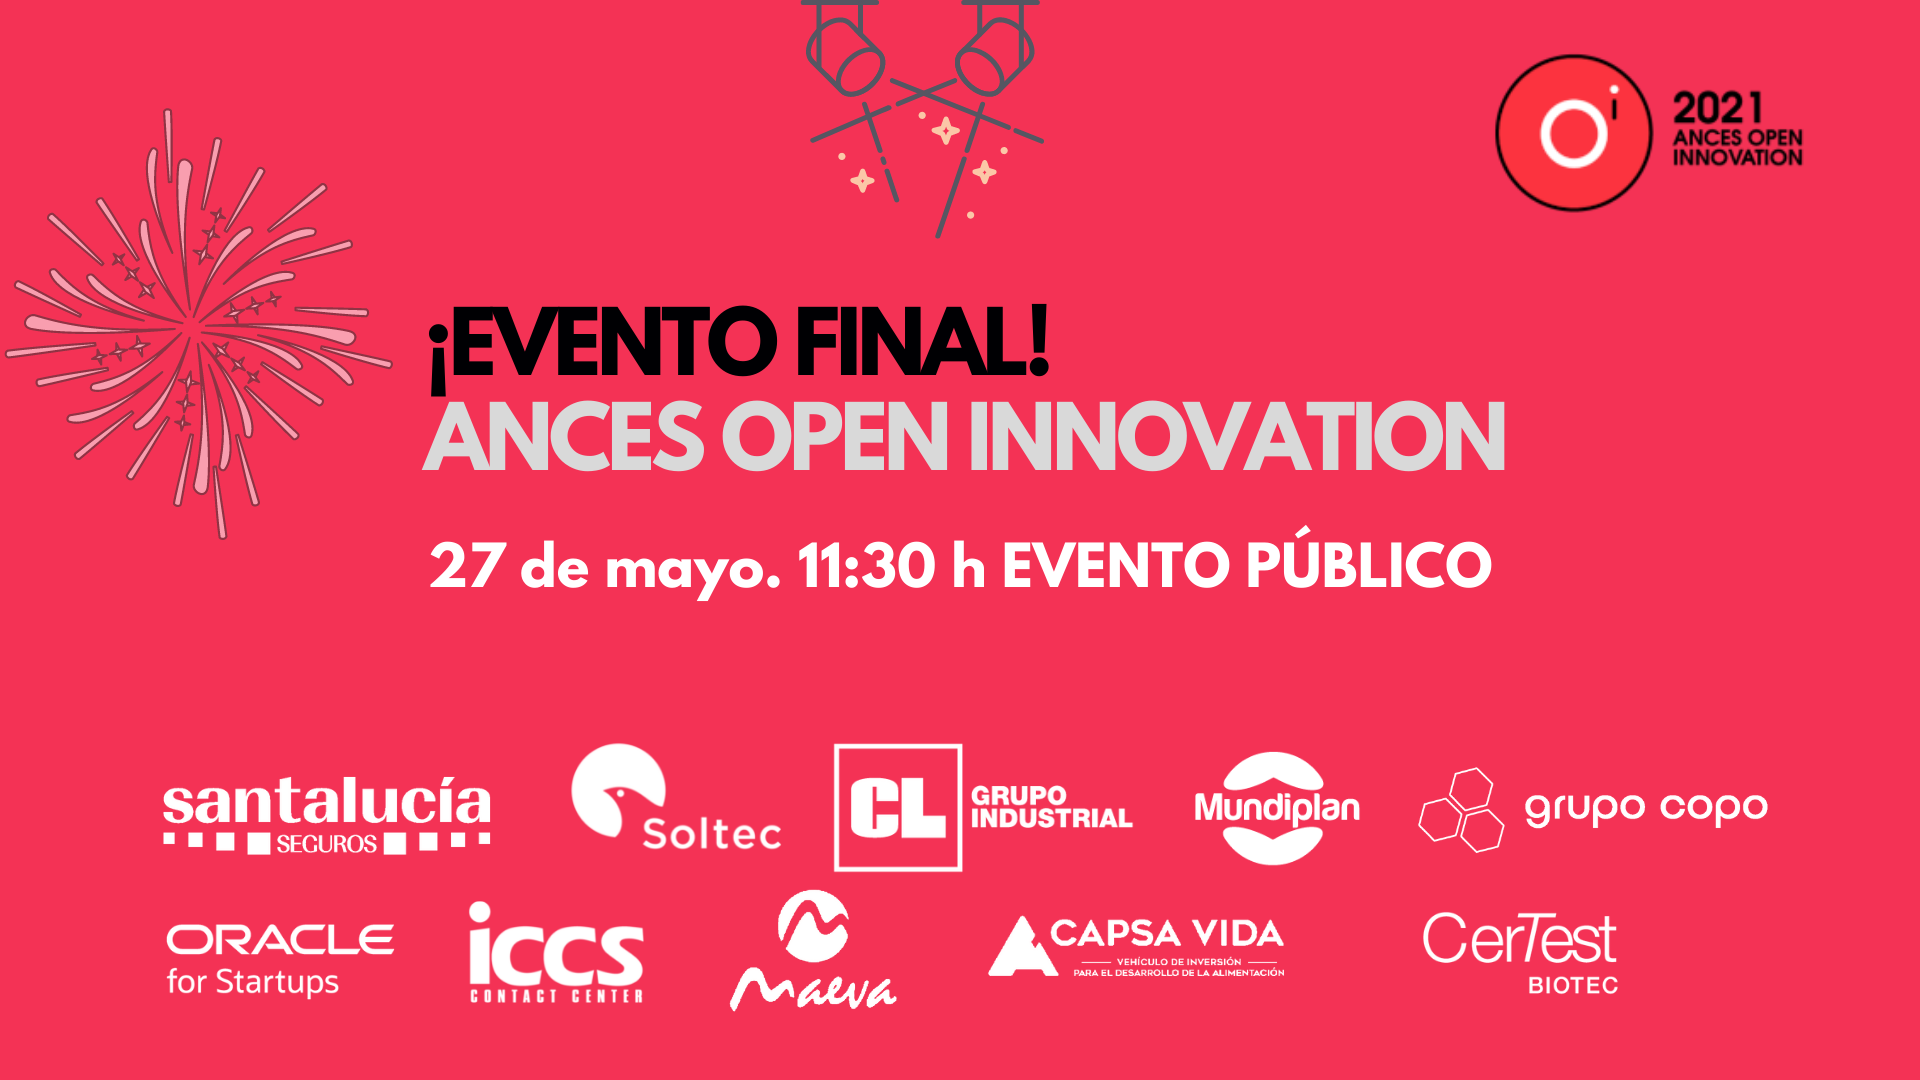 Llega el evento final de la iniciativa de innovación abierta de CEEIARAGON con ANCES: conoce a los ganadores